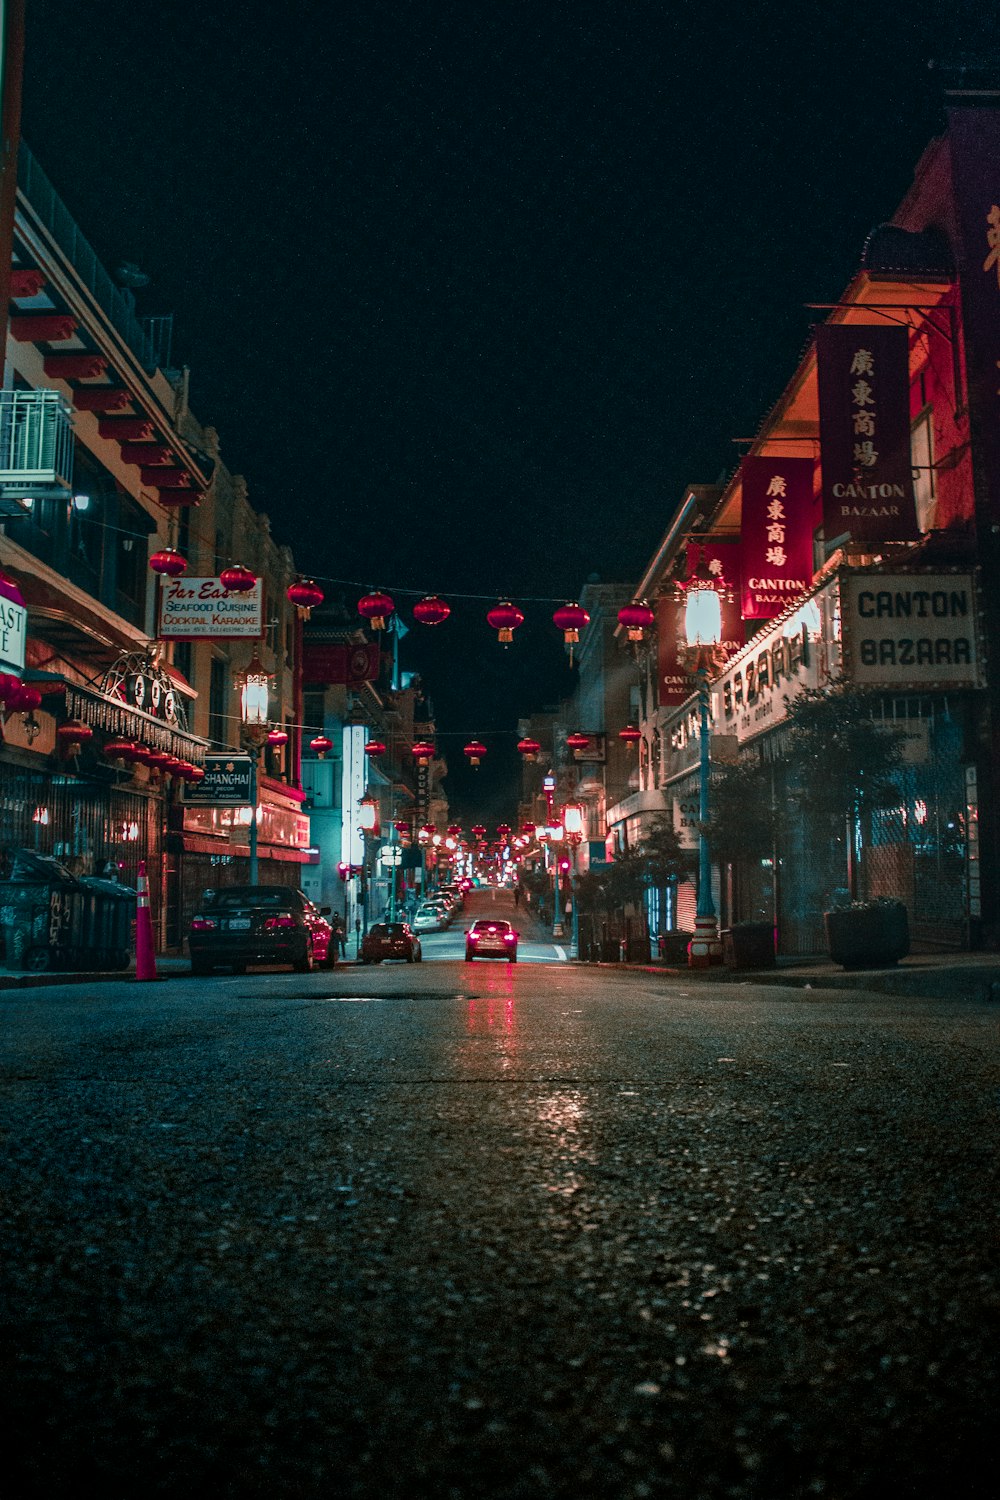 Loja do Bazar de Cantão durante a noite